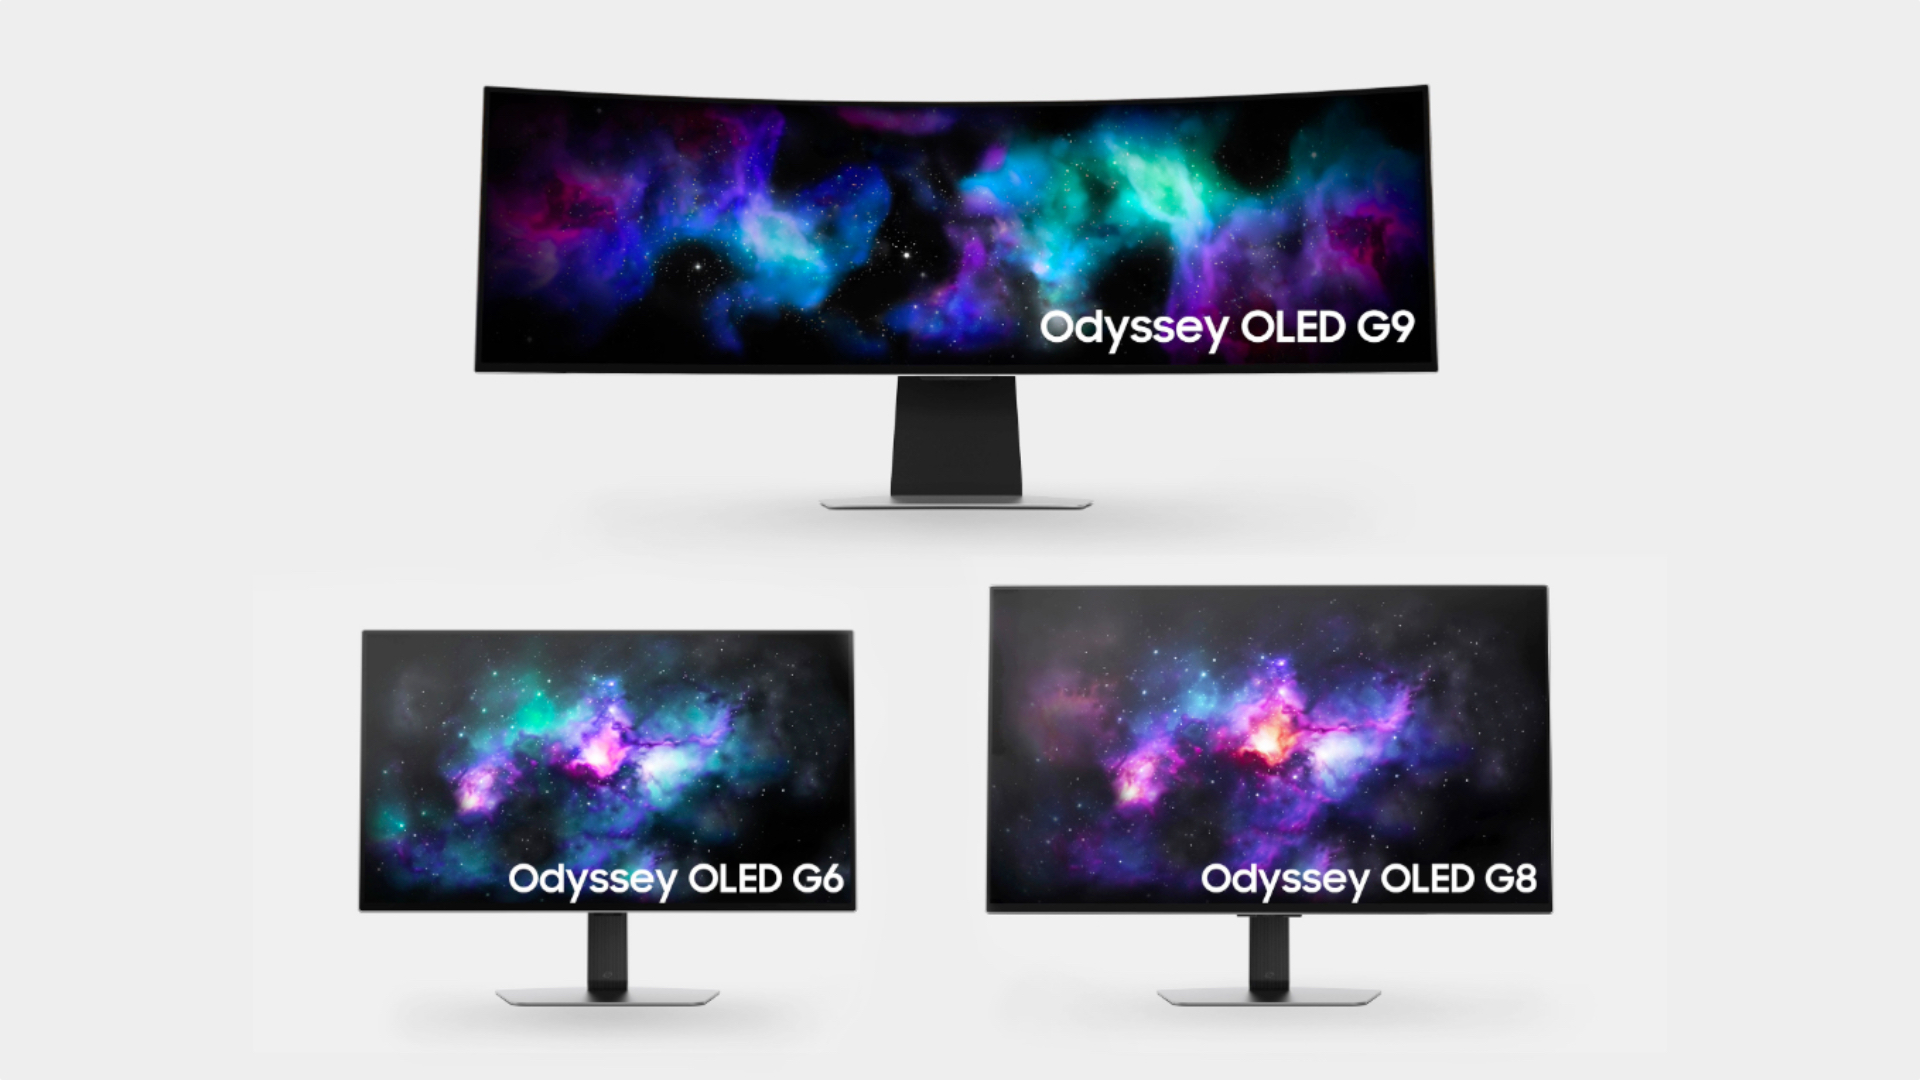 Samsung Odyssey OLED G6 G8 G9 Gaming Monitors